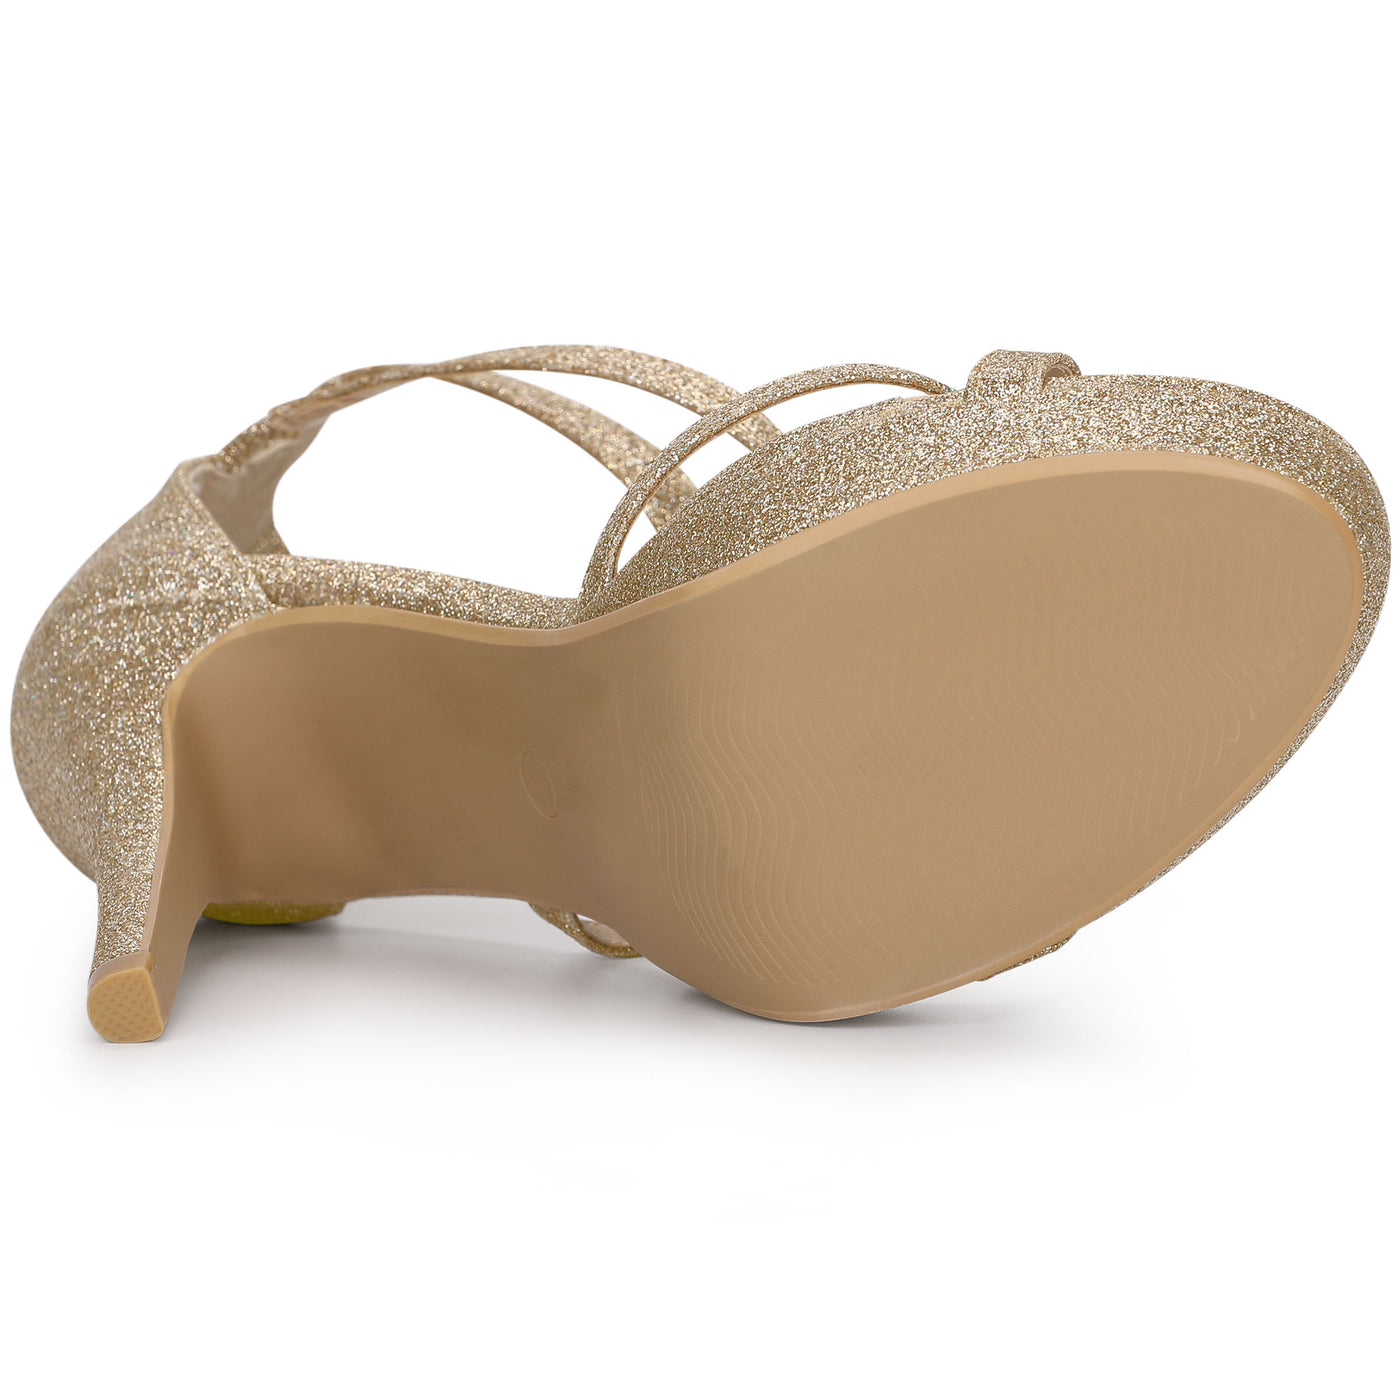 Bublédon Perphy Glitter Platform Strappy Stiletto Heel Sandals